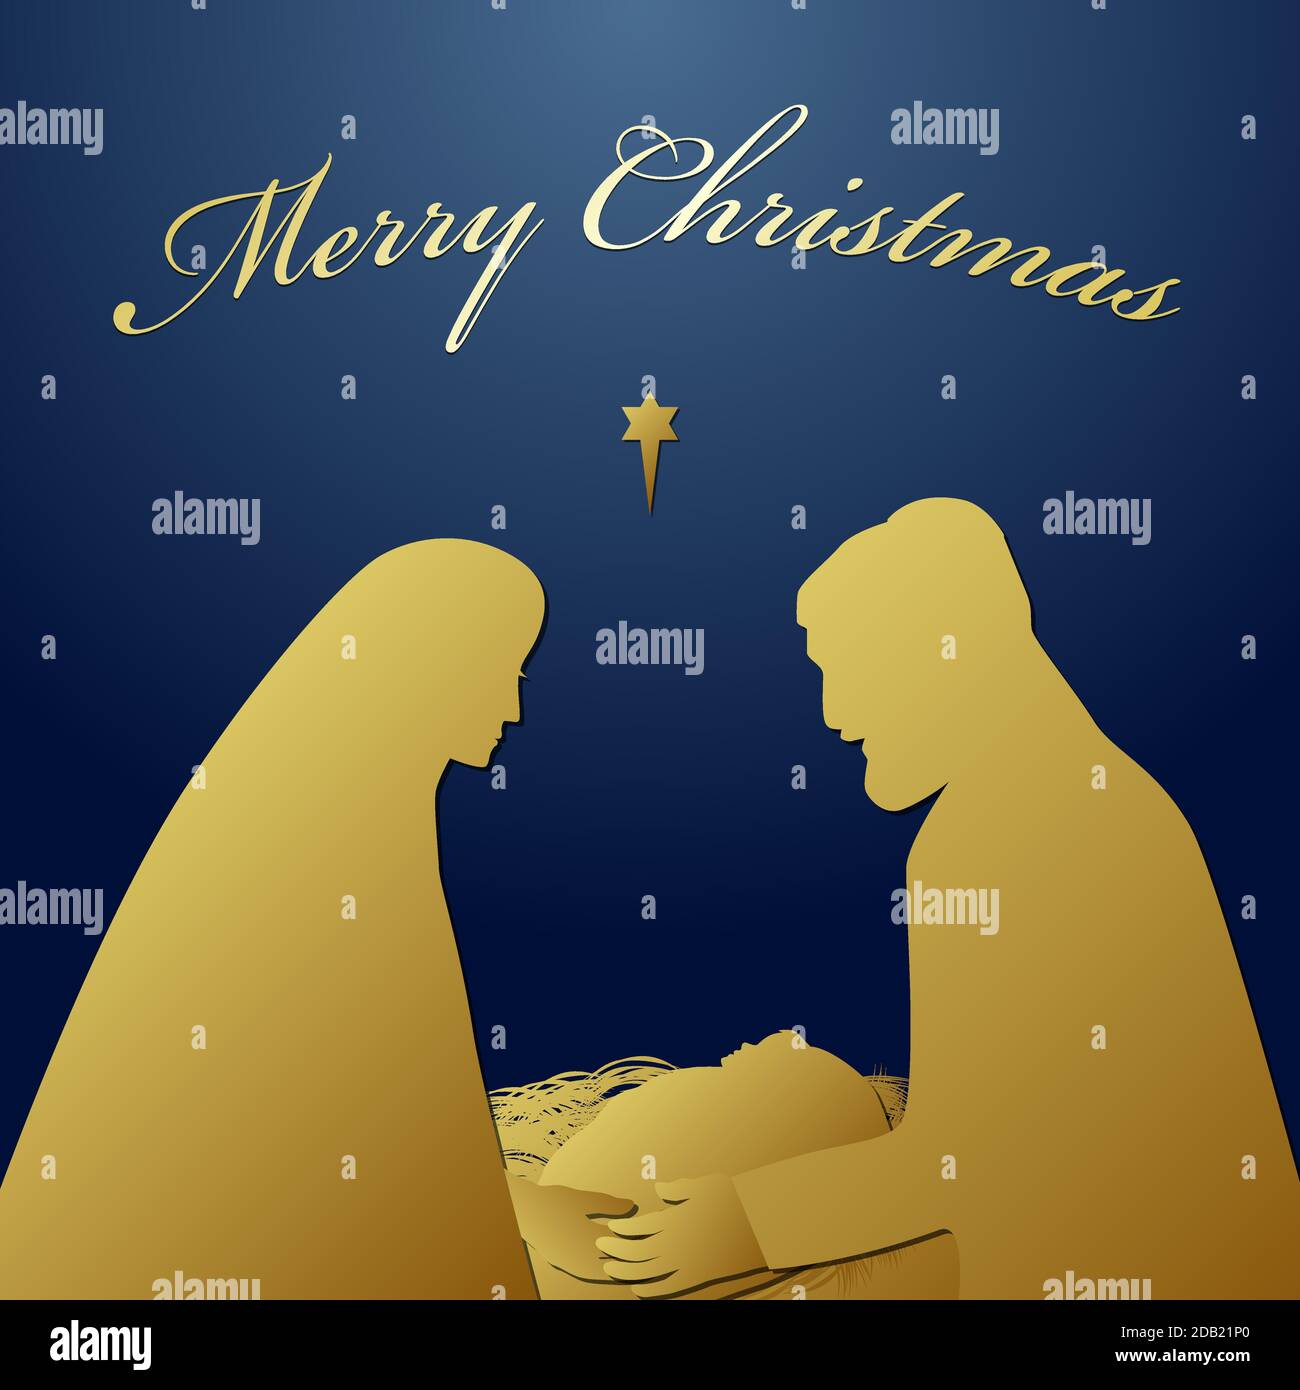 Frohe Weihnachten Heilige Nacht Religiöse Grüße Sohn gottes wurde geistliche biblische Geschichte geboren. Quadratische dunkelblaue Hintergrund Silhouette Paar Charakter Stock Vektor